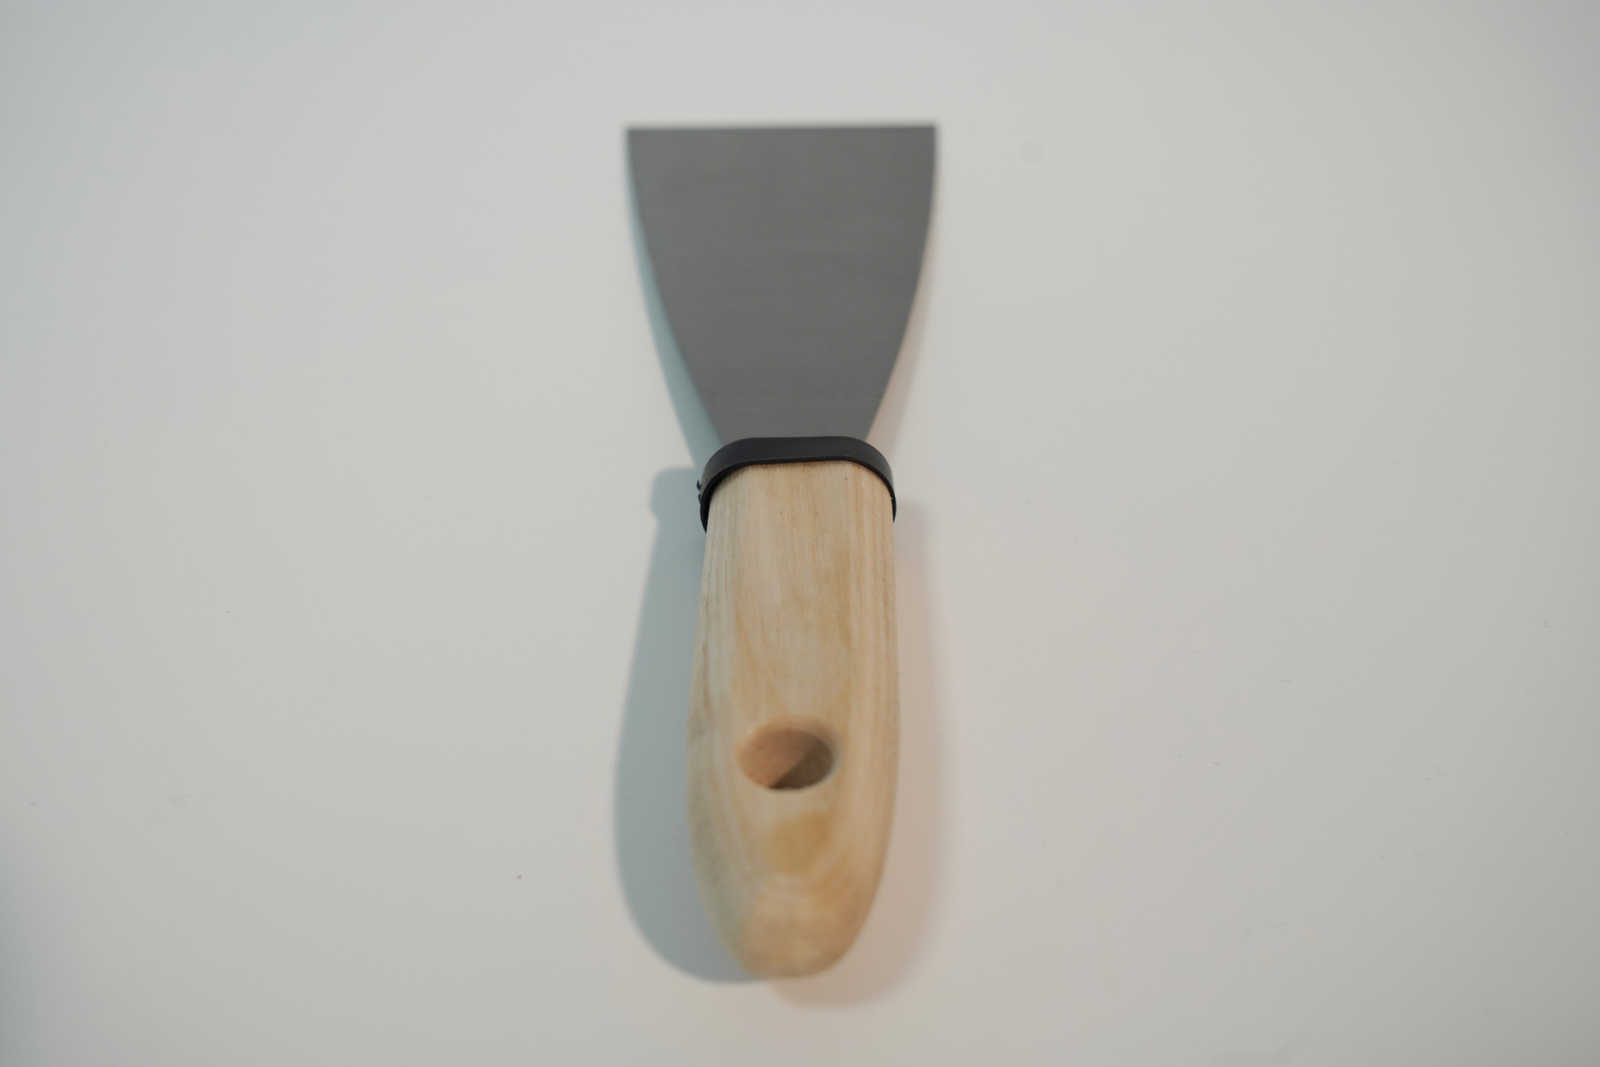             Espátula de pintor de 60 mm con hoja de acero flexible y mango de madera
        